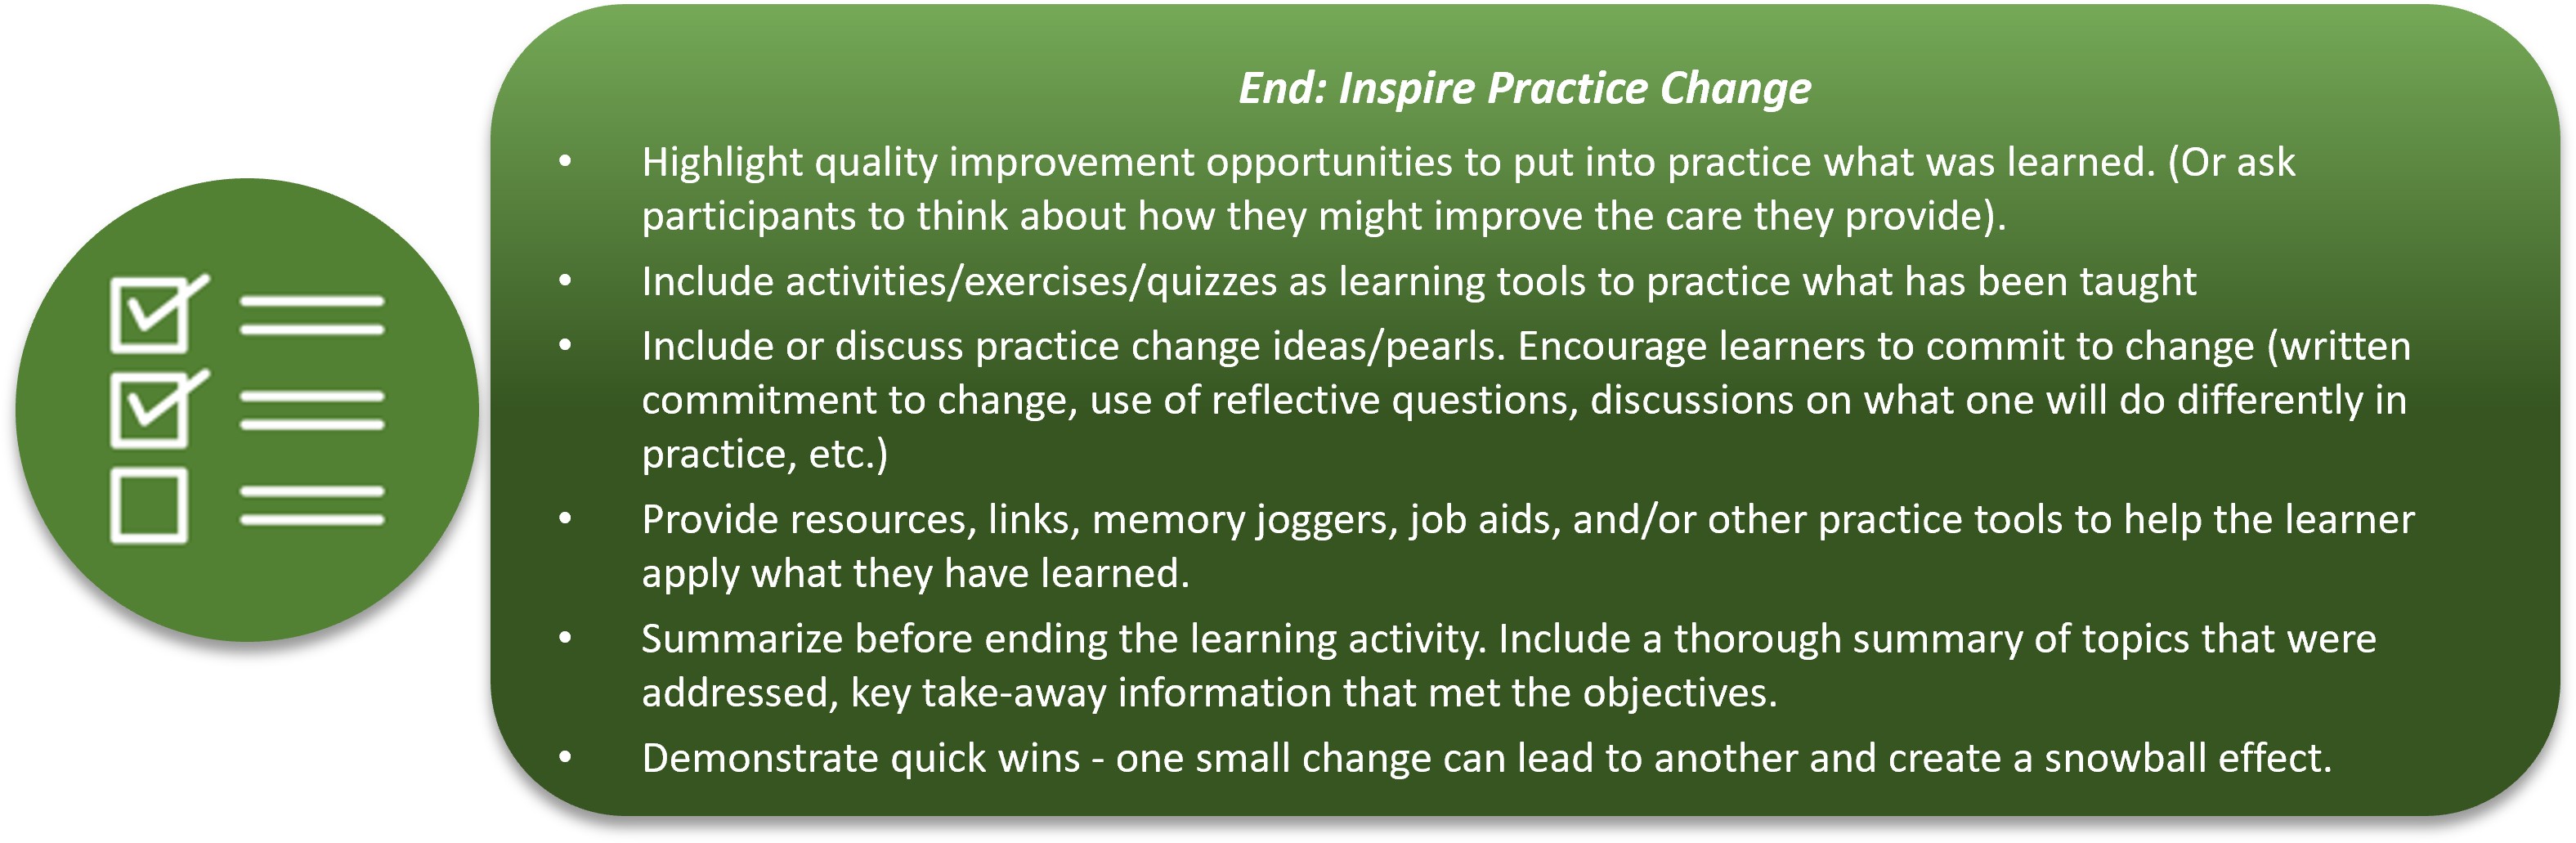 Inspire practice change